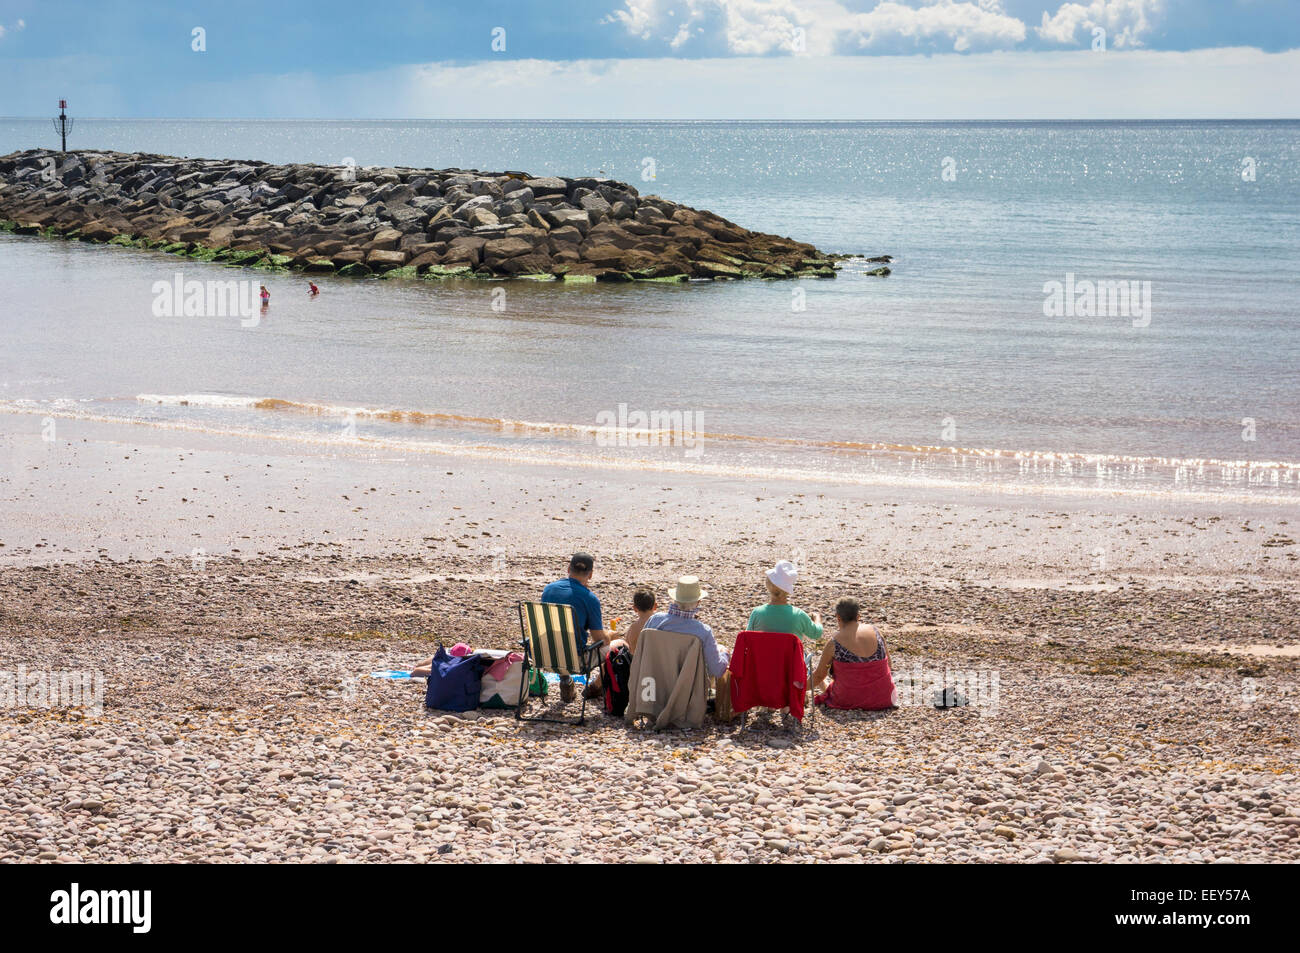 Menschen in Liegestühlen am Strand im Urlaub am Meer uk Resort von Sidmouth, East Devon, England, Großbritannien Stockfoto